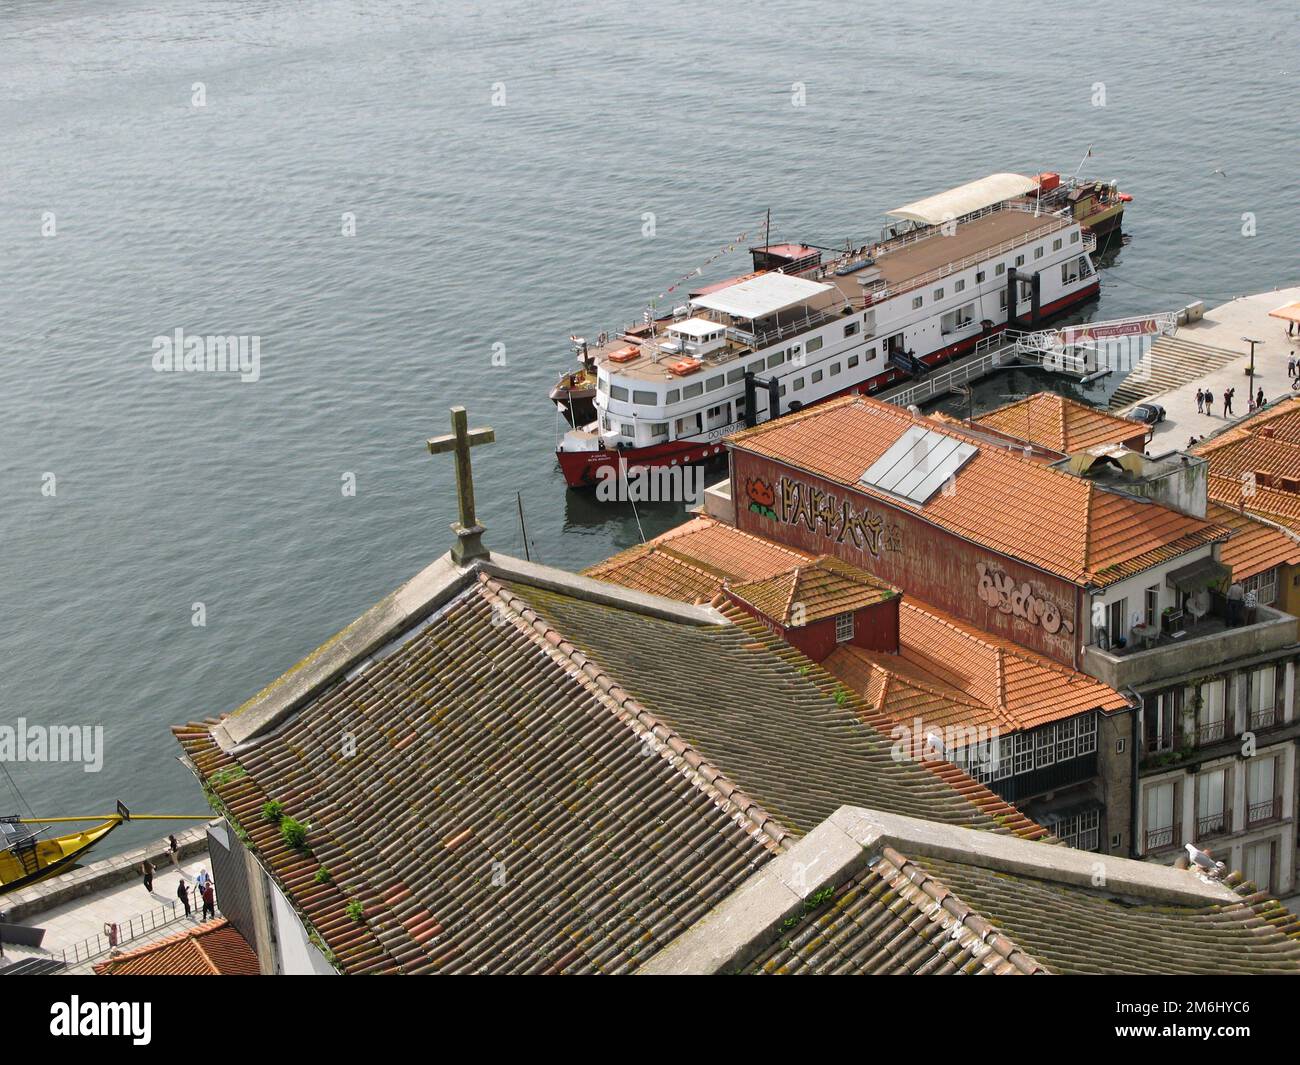 Porto View - Zona Ribeira seen from the Luis I Bridge - Portugal Stock Photo